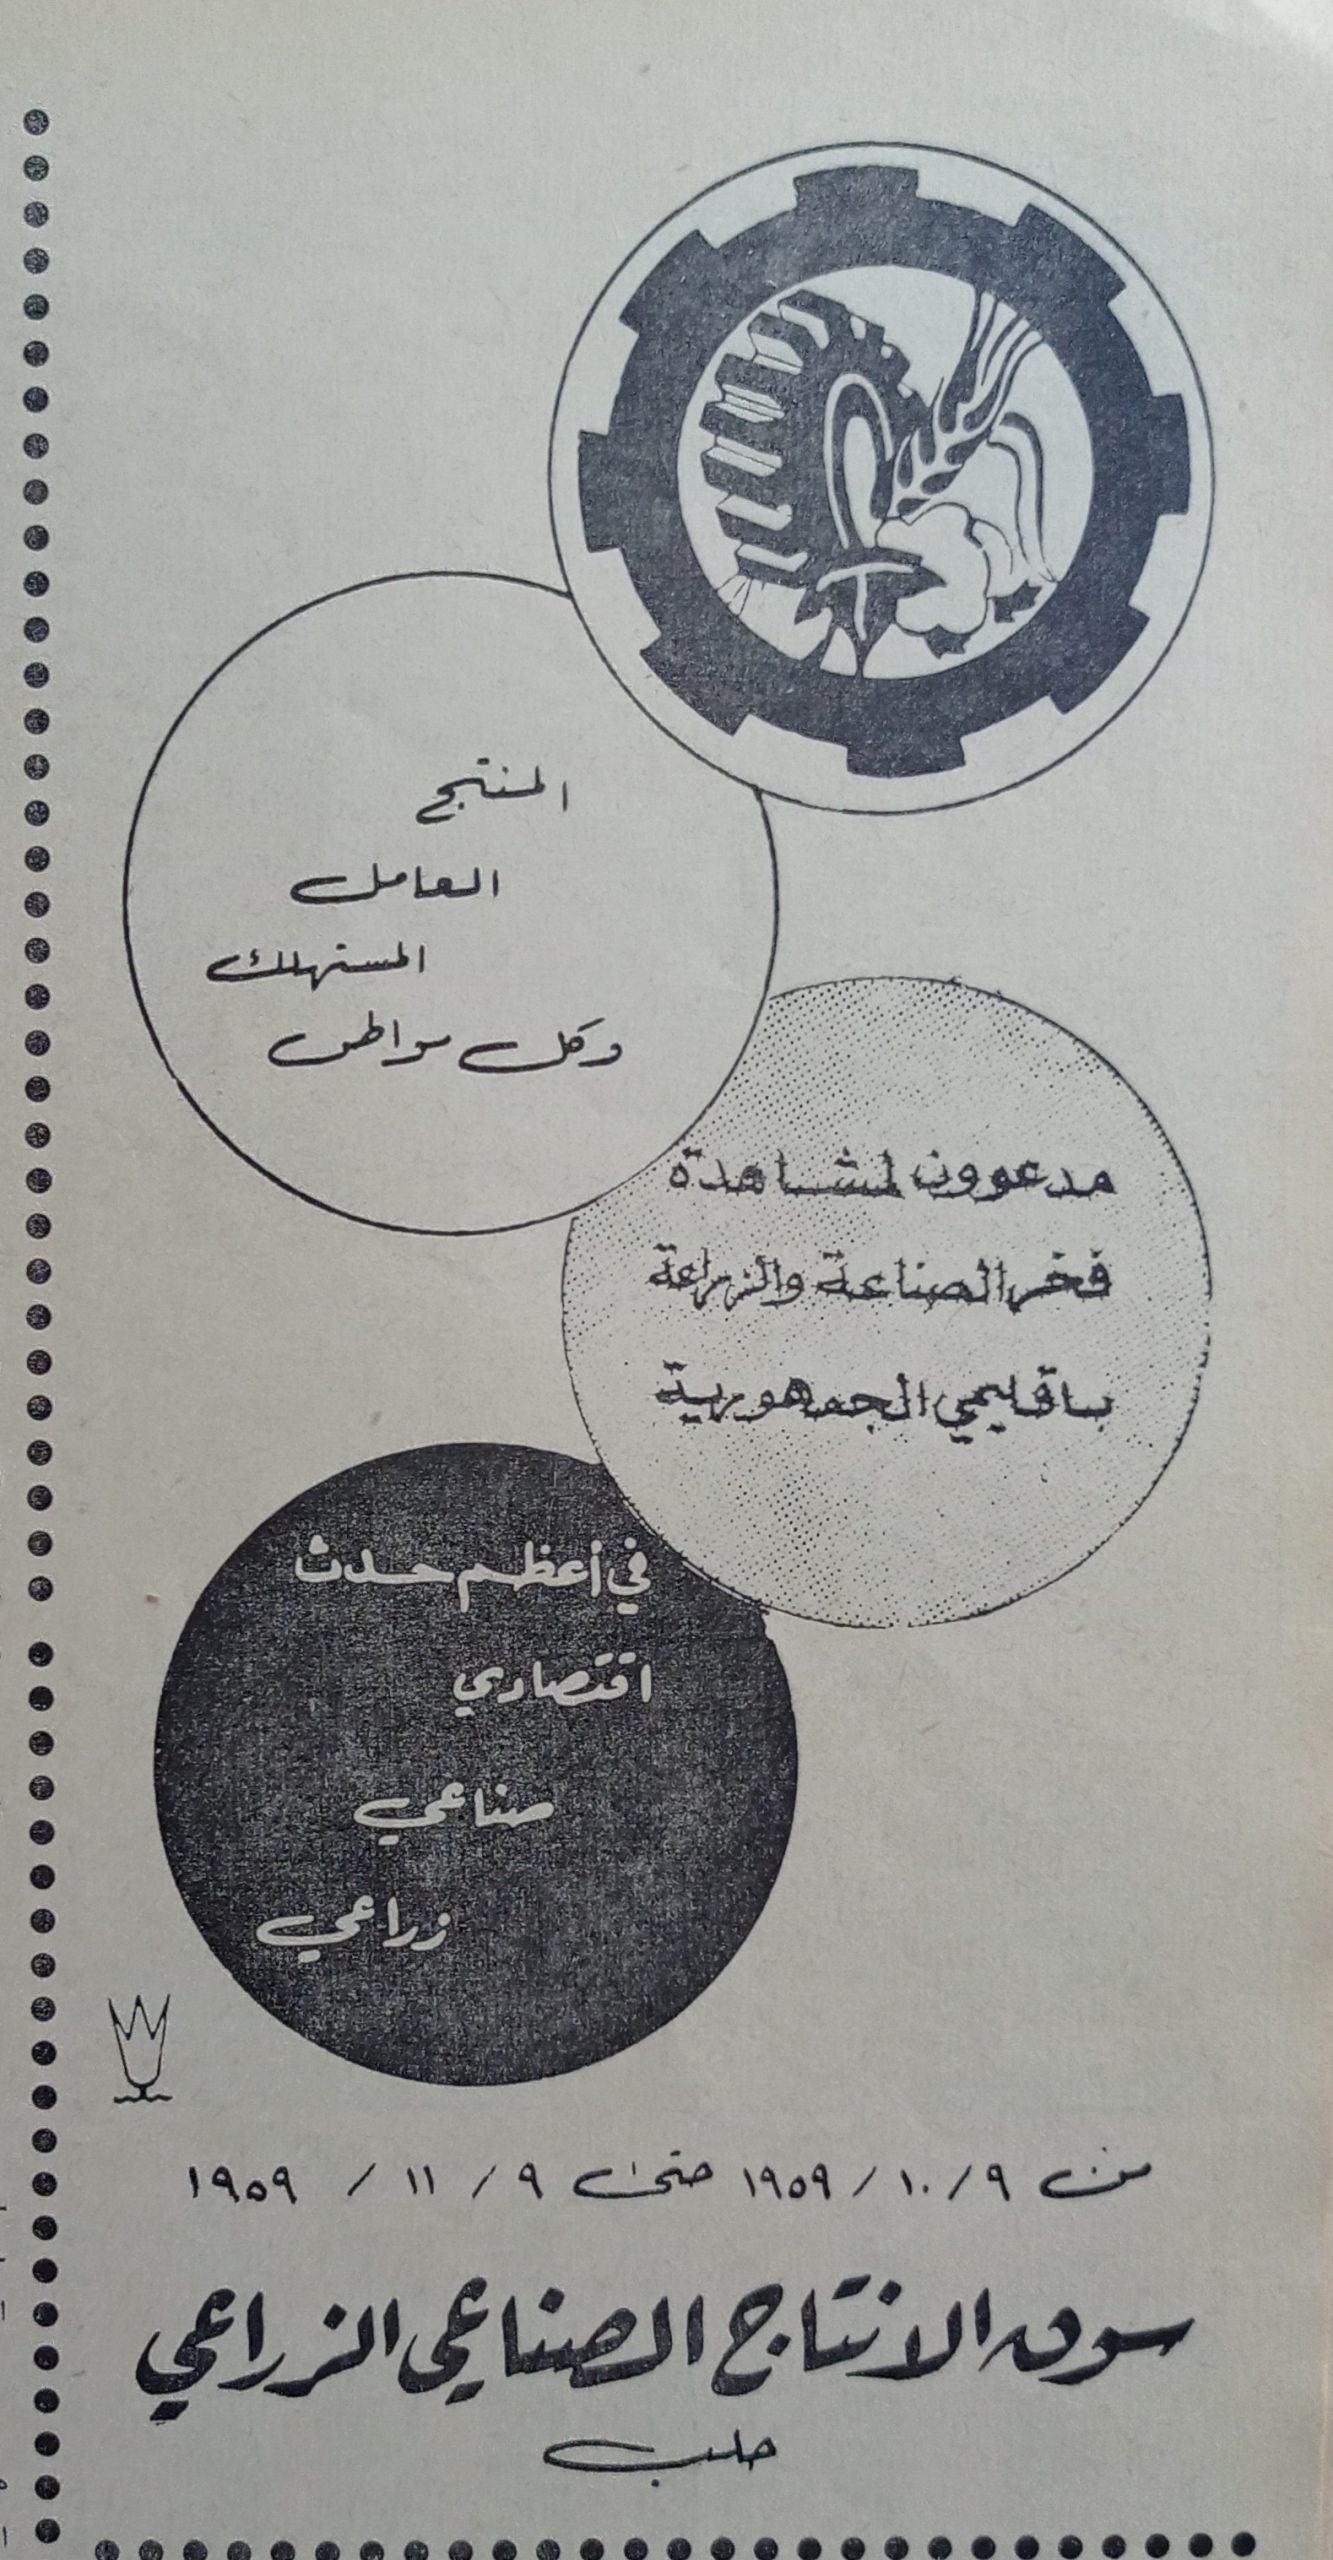 التاريخ السوري المعاصر - إعلان للدعوة لزيارة سوق الانتاج الصناعي و الزراعي في حلب عام 1959